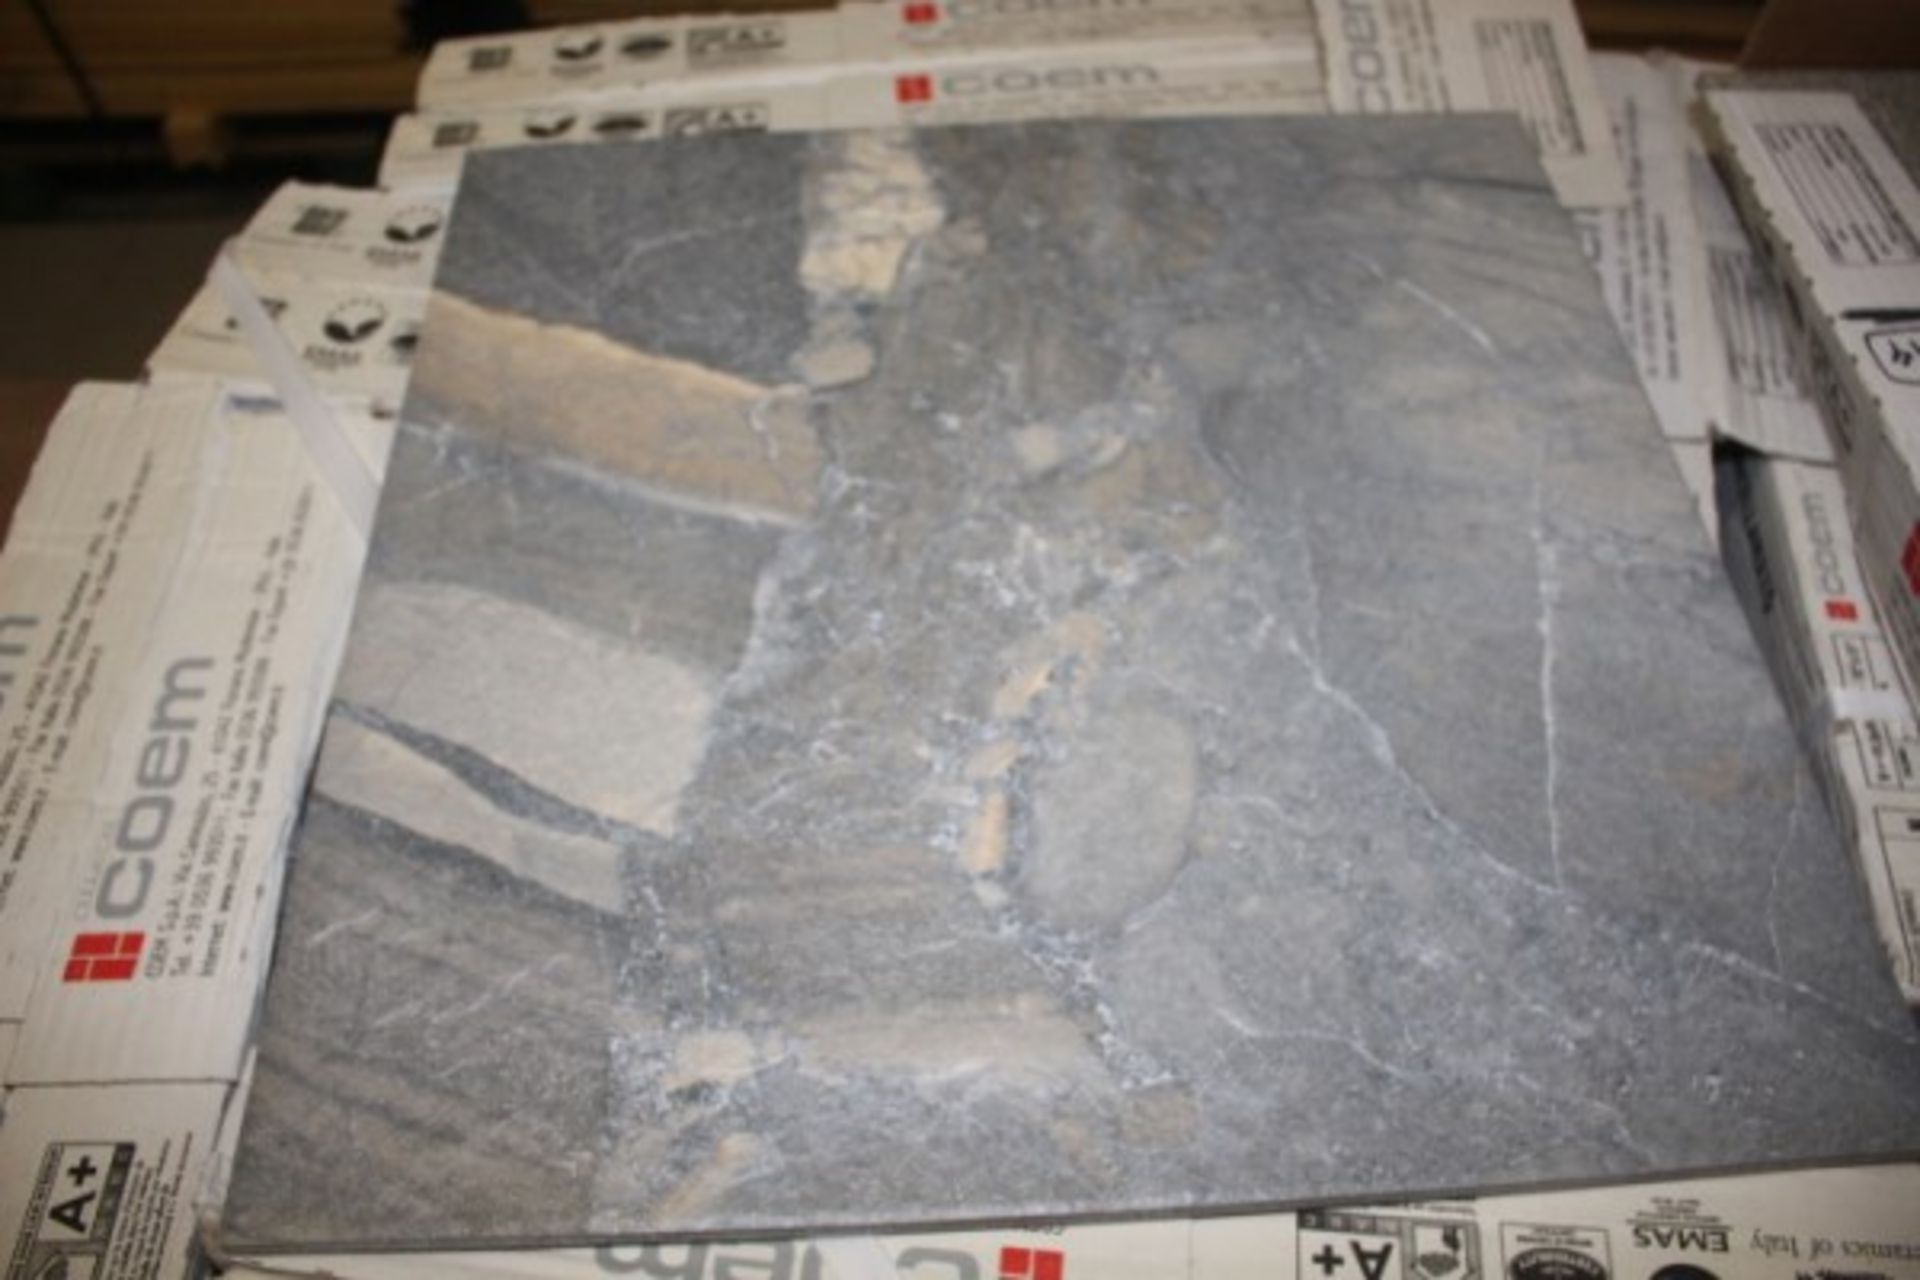 Coem Porcelain Tile High Rock Grey 18" X 18" Tile ( approx 530 sqft) - Image 2 of 2